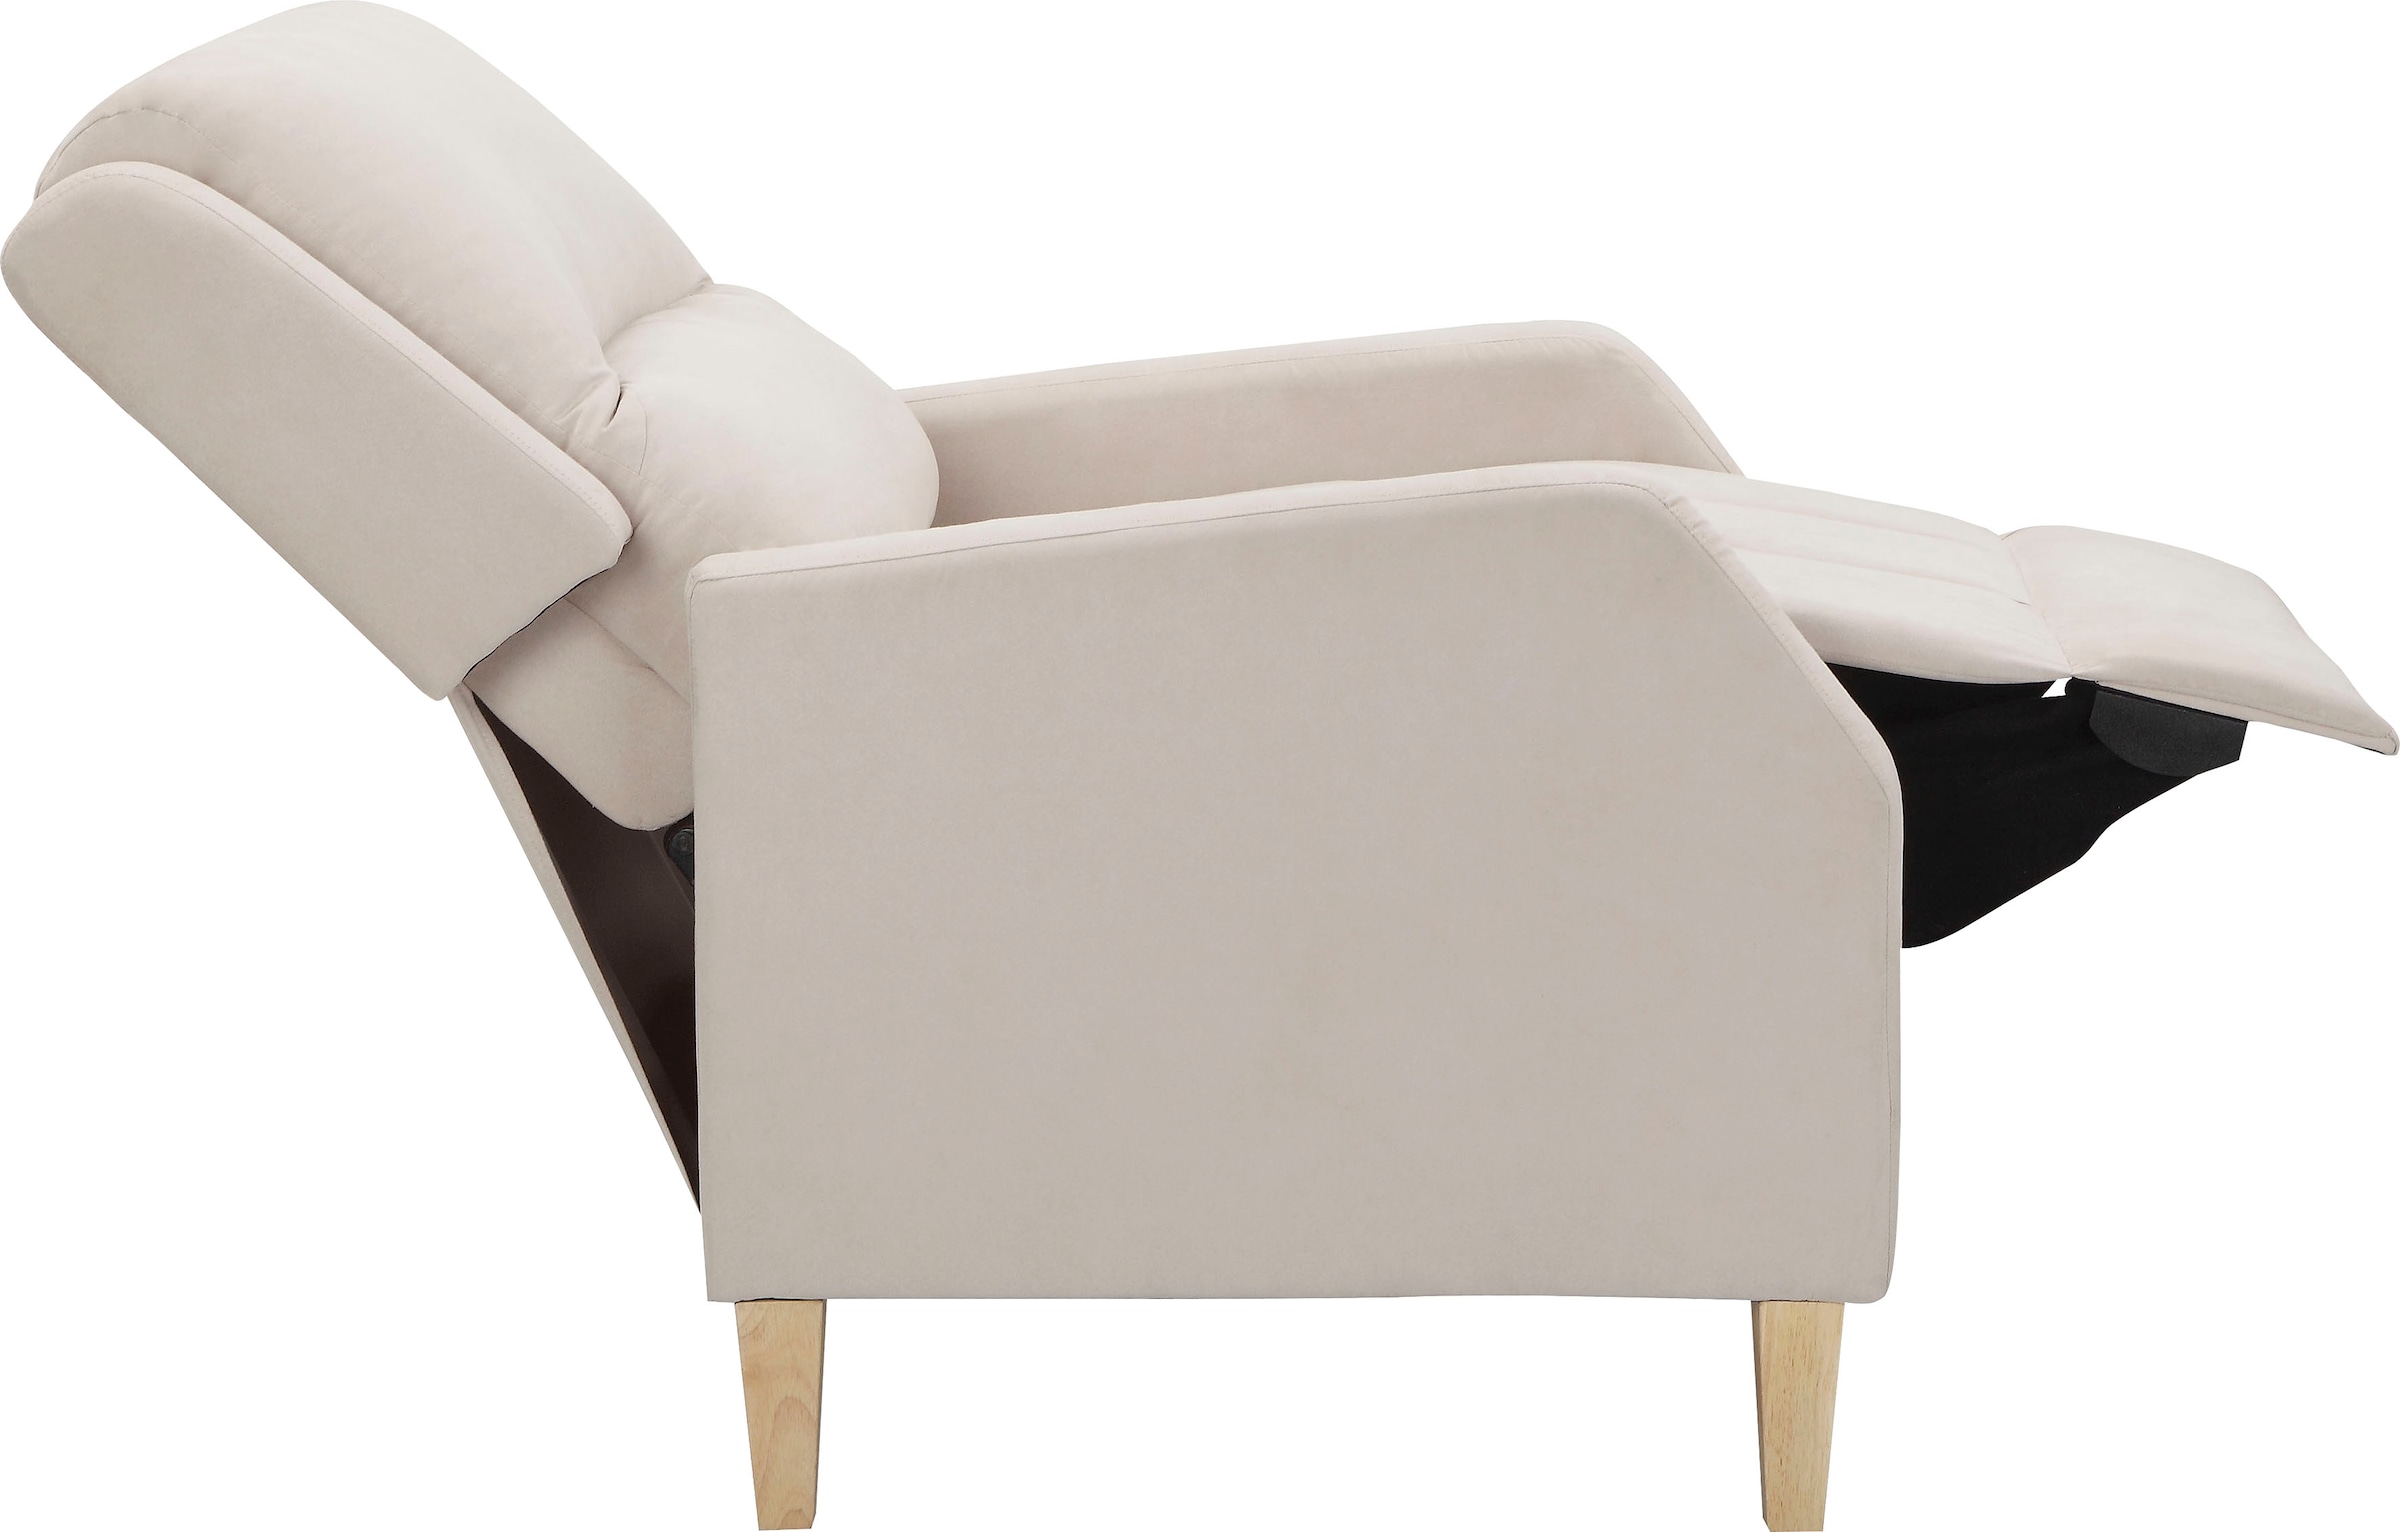 Home affaire Relaxsessel »Tholey«, (1 St.), Relaxsessel mit Verstellung, Sitz und Rücken gepolstert, Sitzhöhe 51cm